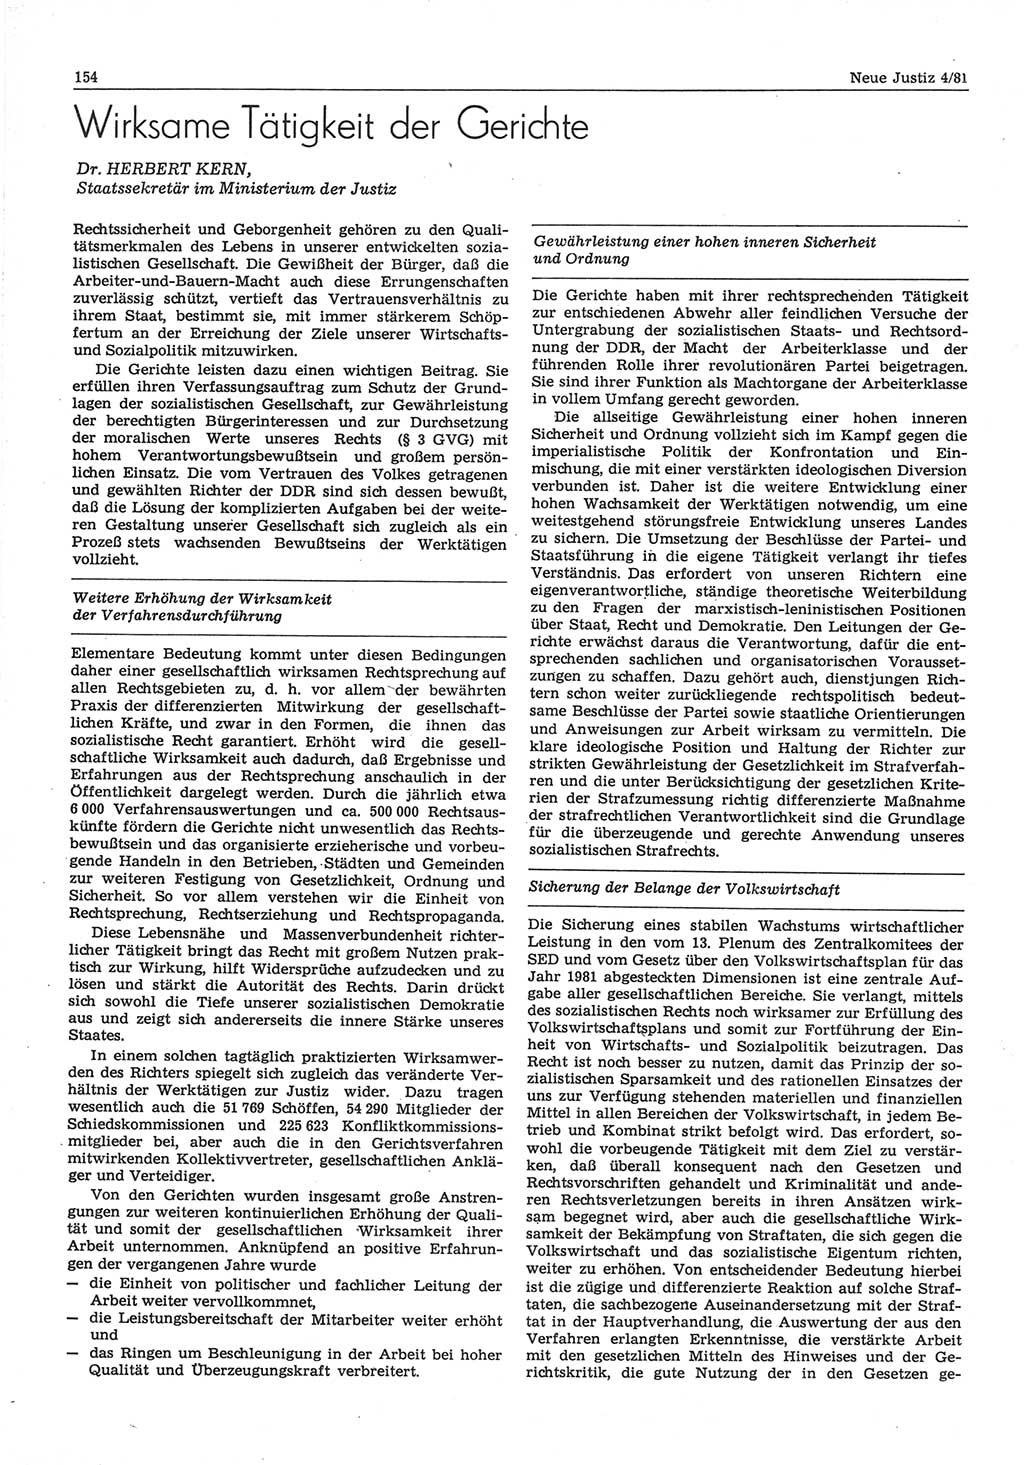 Neue Justiz (NJ), Zeitschrift für sozialistisches Recht und Gesetzlichkeit [Deutsche Demokratische Republik (DDR)], 35. Jahrgang 1981, Seite 154 (NJ DDR 1981, S. 154)